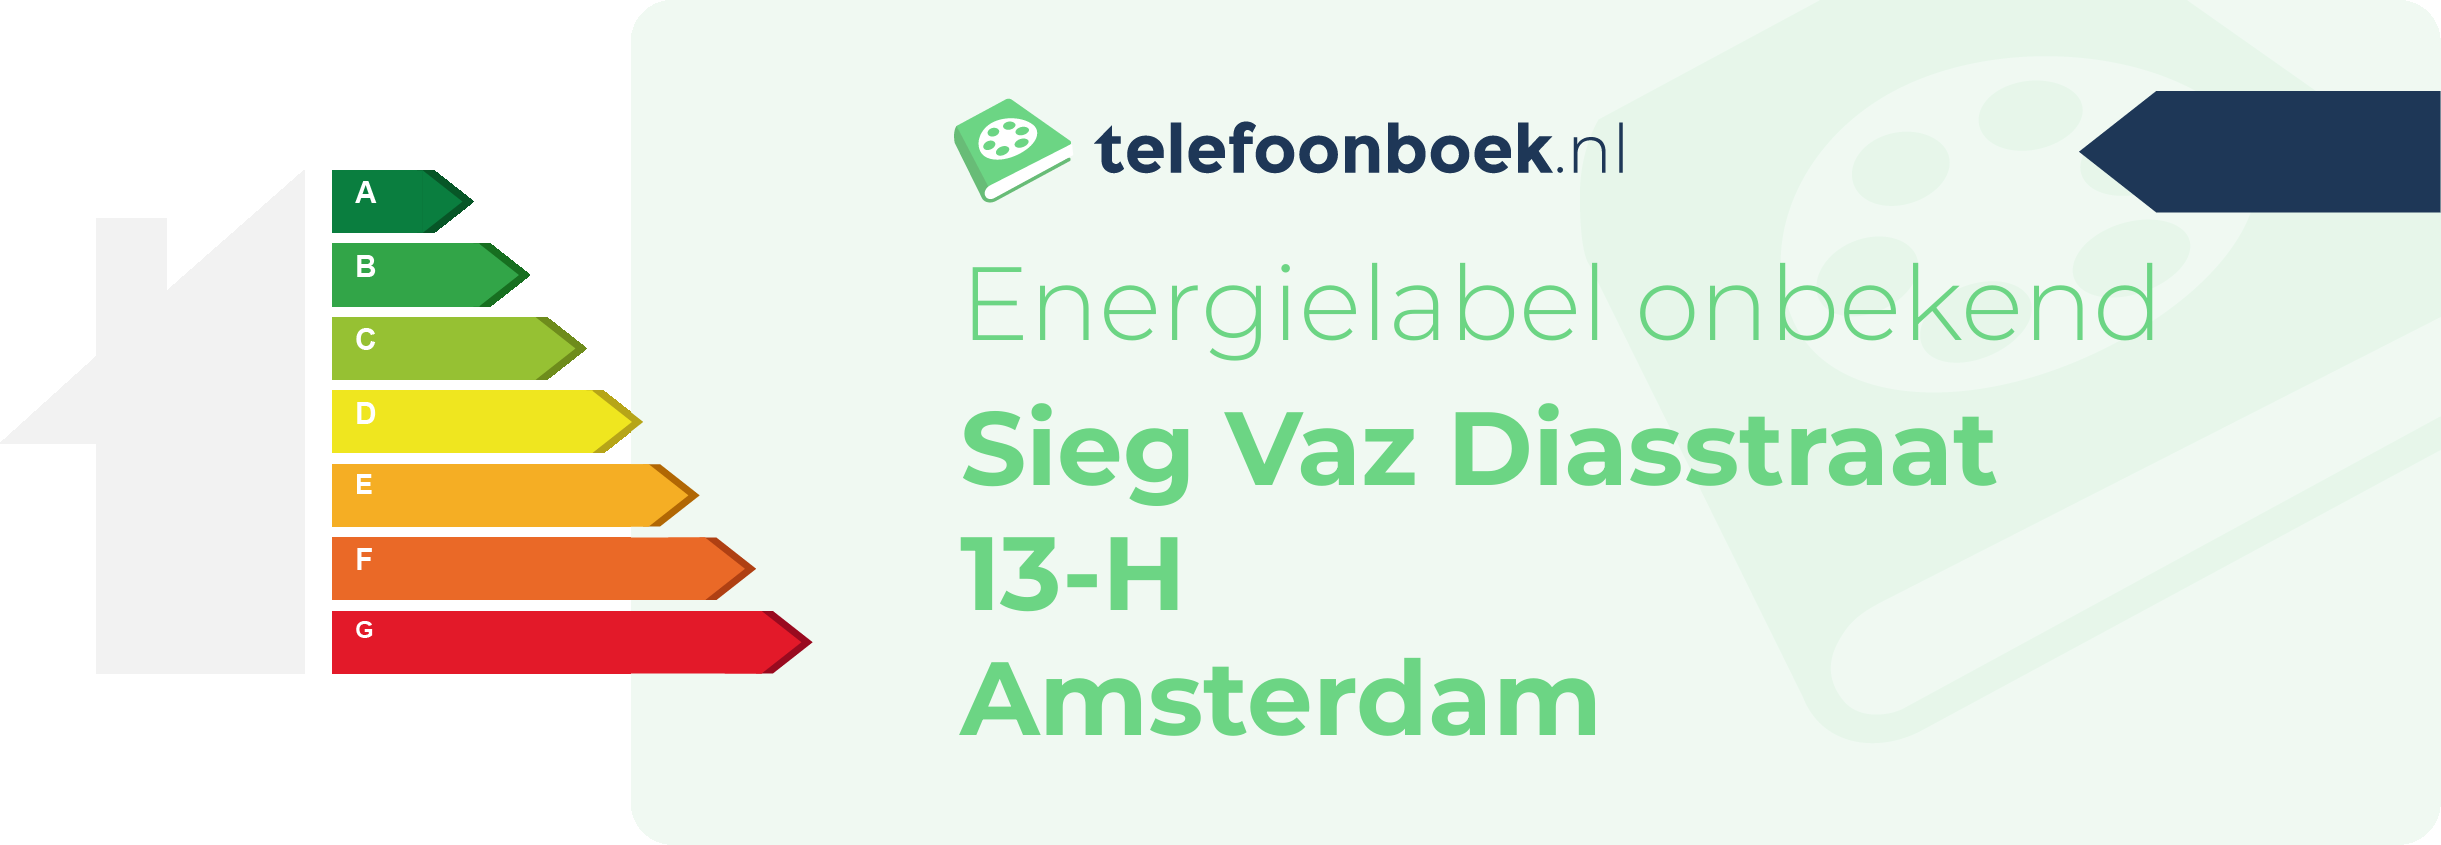 Energielabel Sieg Vaz Diasstraat 13-H Amsterdam